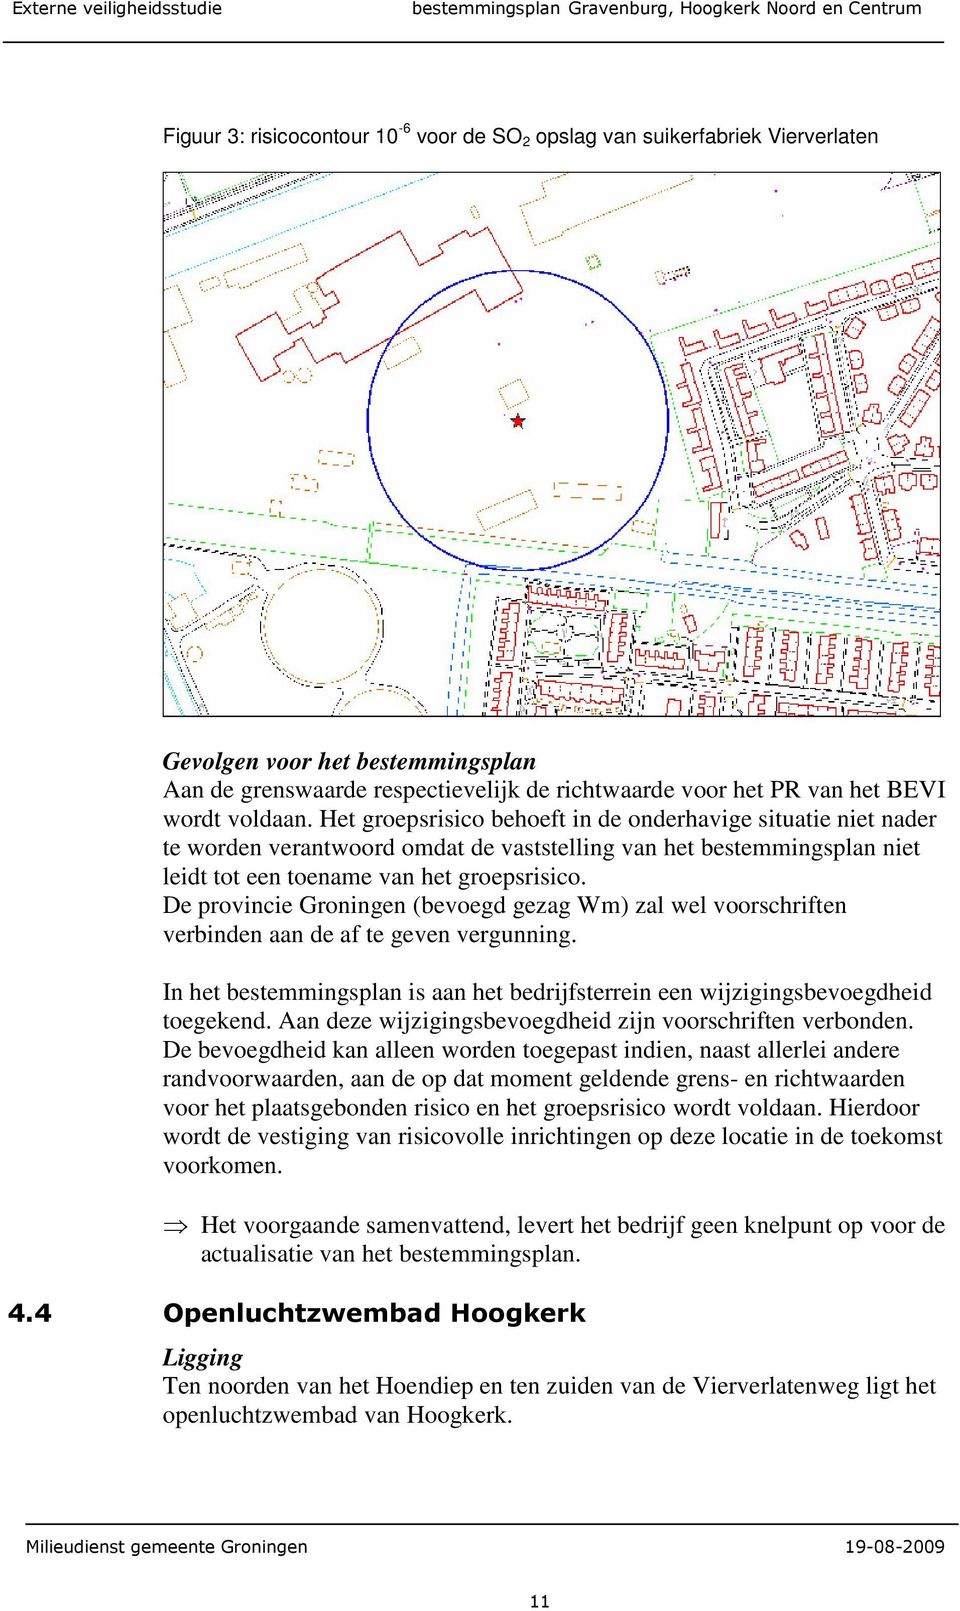 De provincie Groningen (bevoegd gezag Wm) zal wel voorschriften verbinden aan de af te geven vergunning. In het bestemmingsplan is aan het bedrijfsterrein een wijzigingsbevoegdheid toegekend.